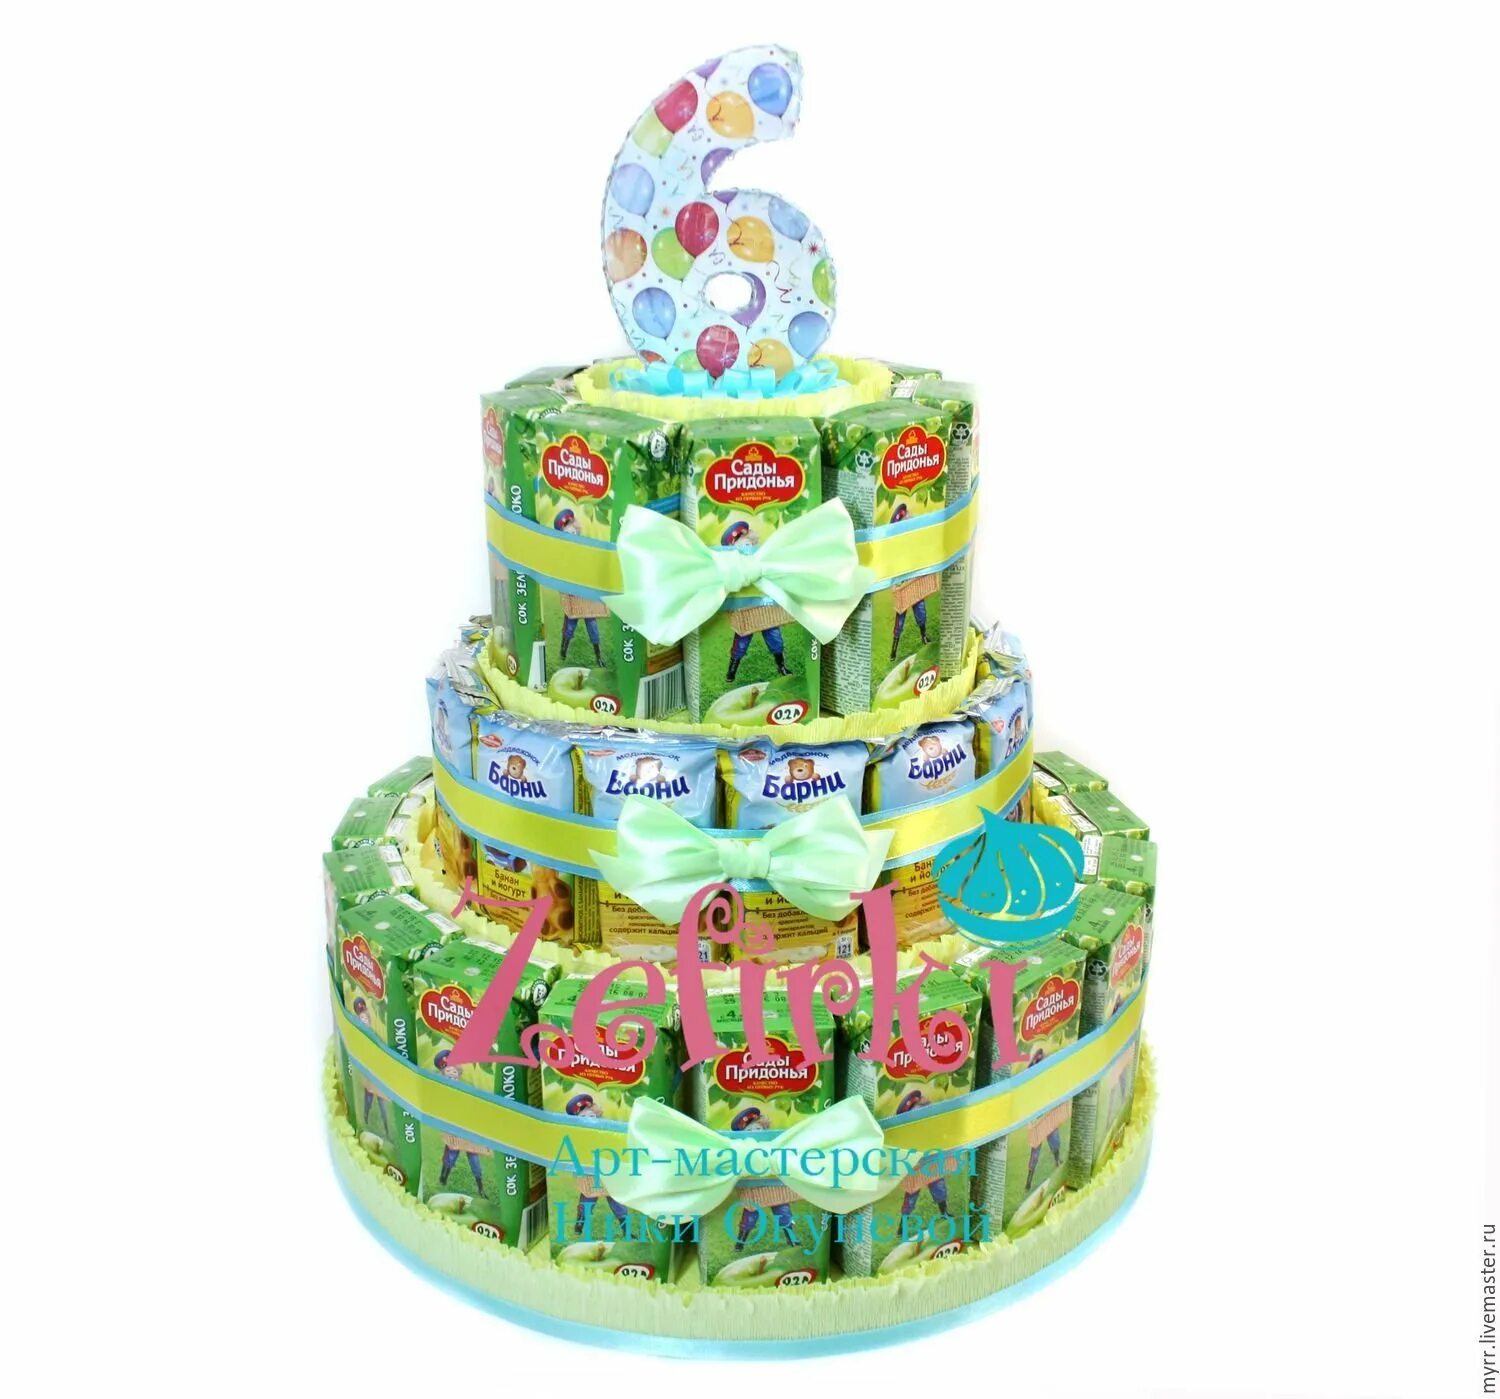 Что можно в сад на день рождения. Угощения в детский сад на день рождения из Барни и сока. Торт из Барни в садик на день рождения. Торт из сока и Барни. Торт в садик из сладостей.